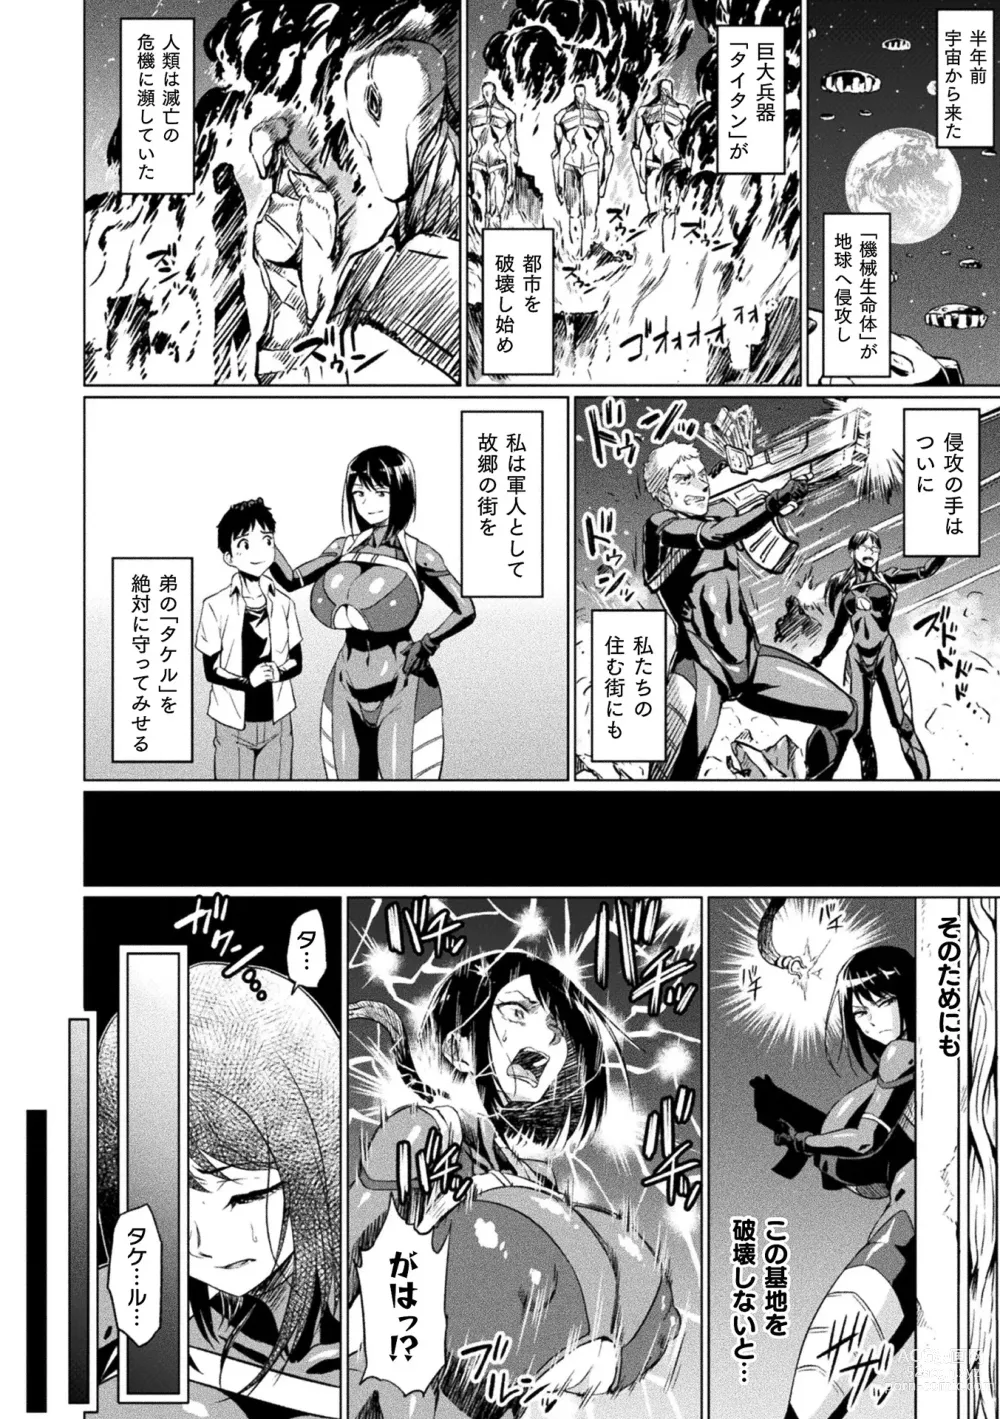 Page 4 of manga Ahegao o Sarashisu Midarana Otome